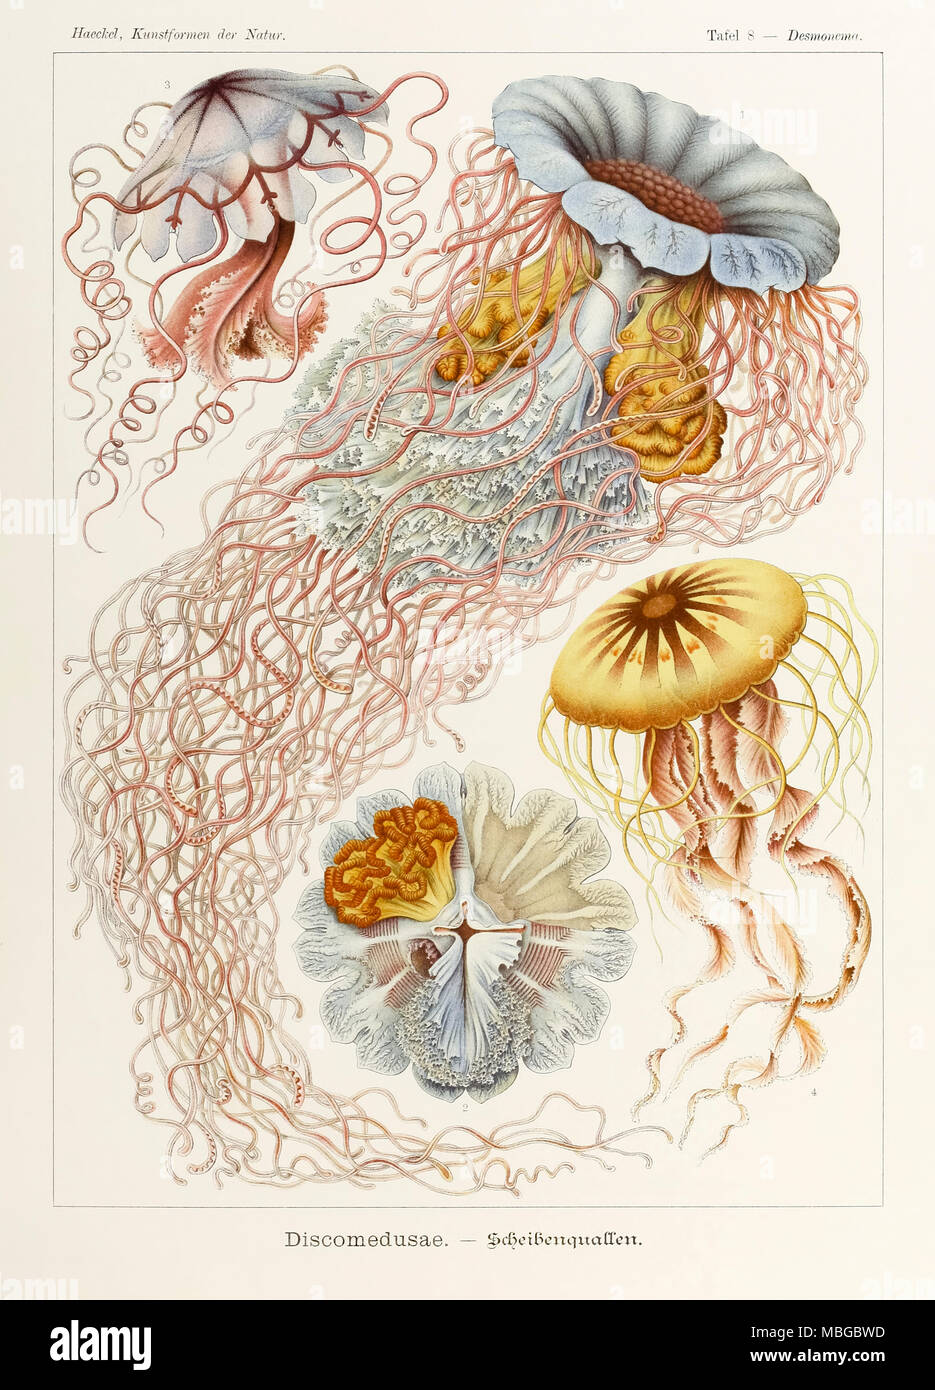 Platte 8 Desmonema Discomedusae von 'Kunstformen der Natur' (Kunstformen in der Natur), illustriert von Ernst Haeckel (1834-1919). Weitere Informationen finden Sie unten. Stockfoto